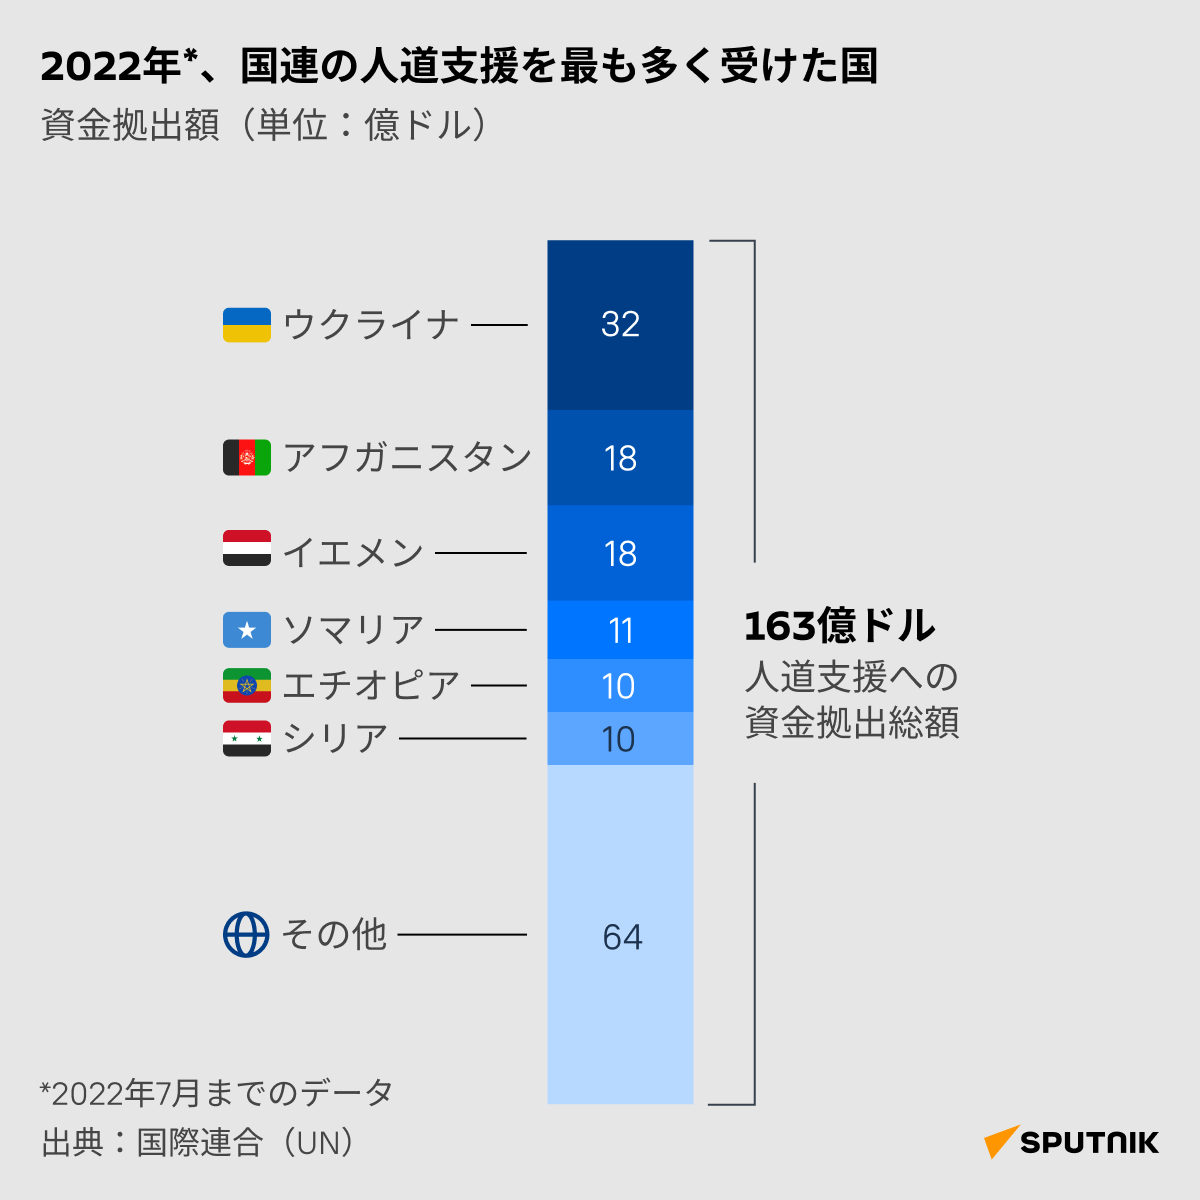 2022年、国連の人道支援を最も多く受けた国 - Sputnik 日本